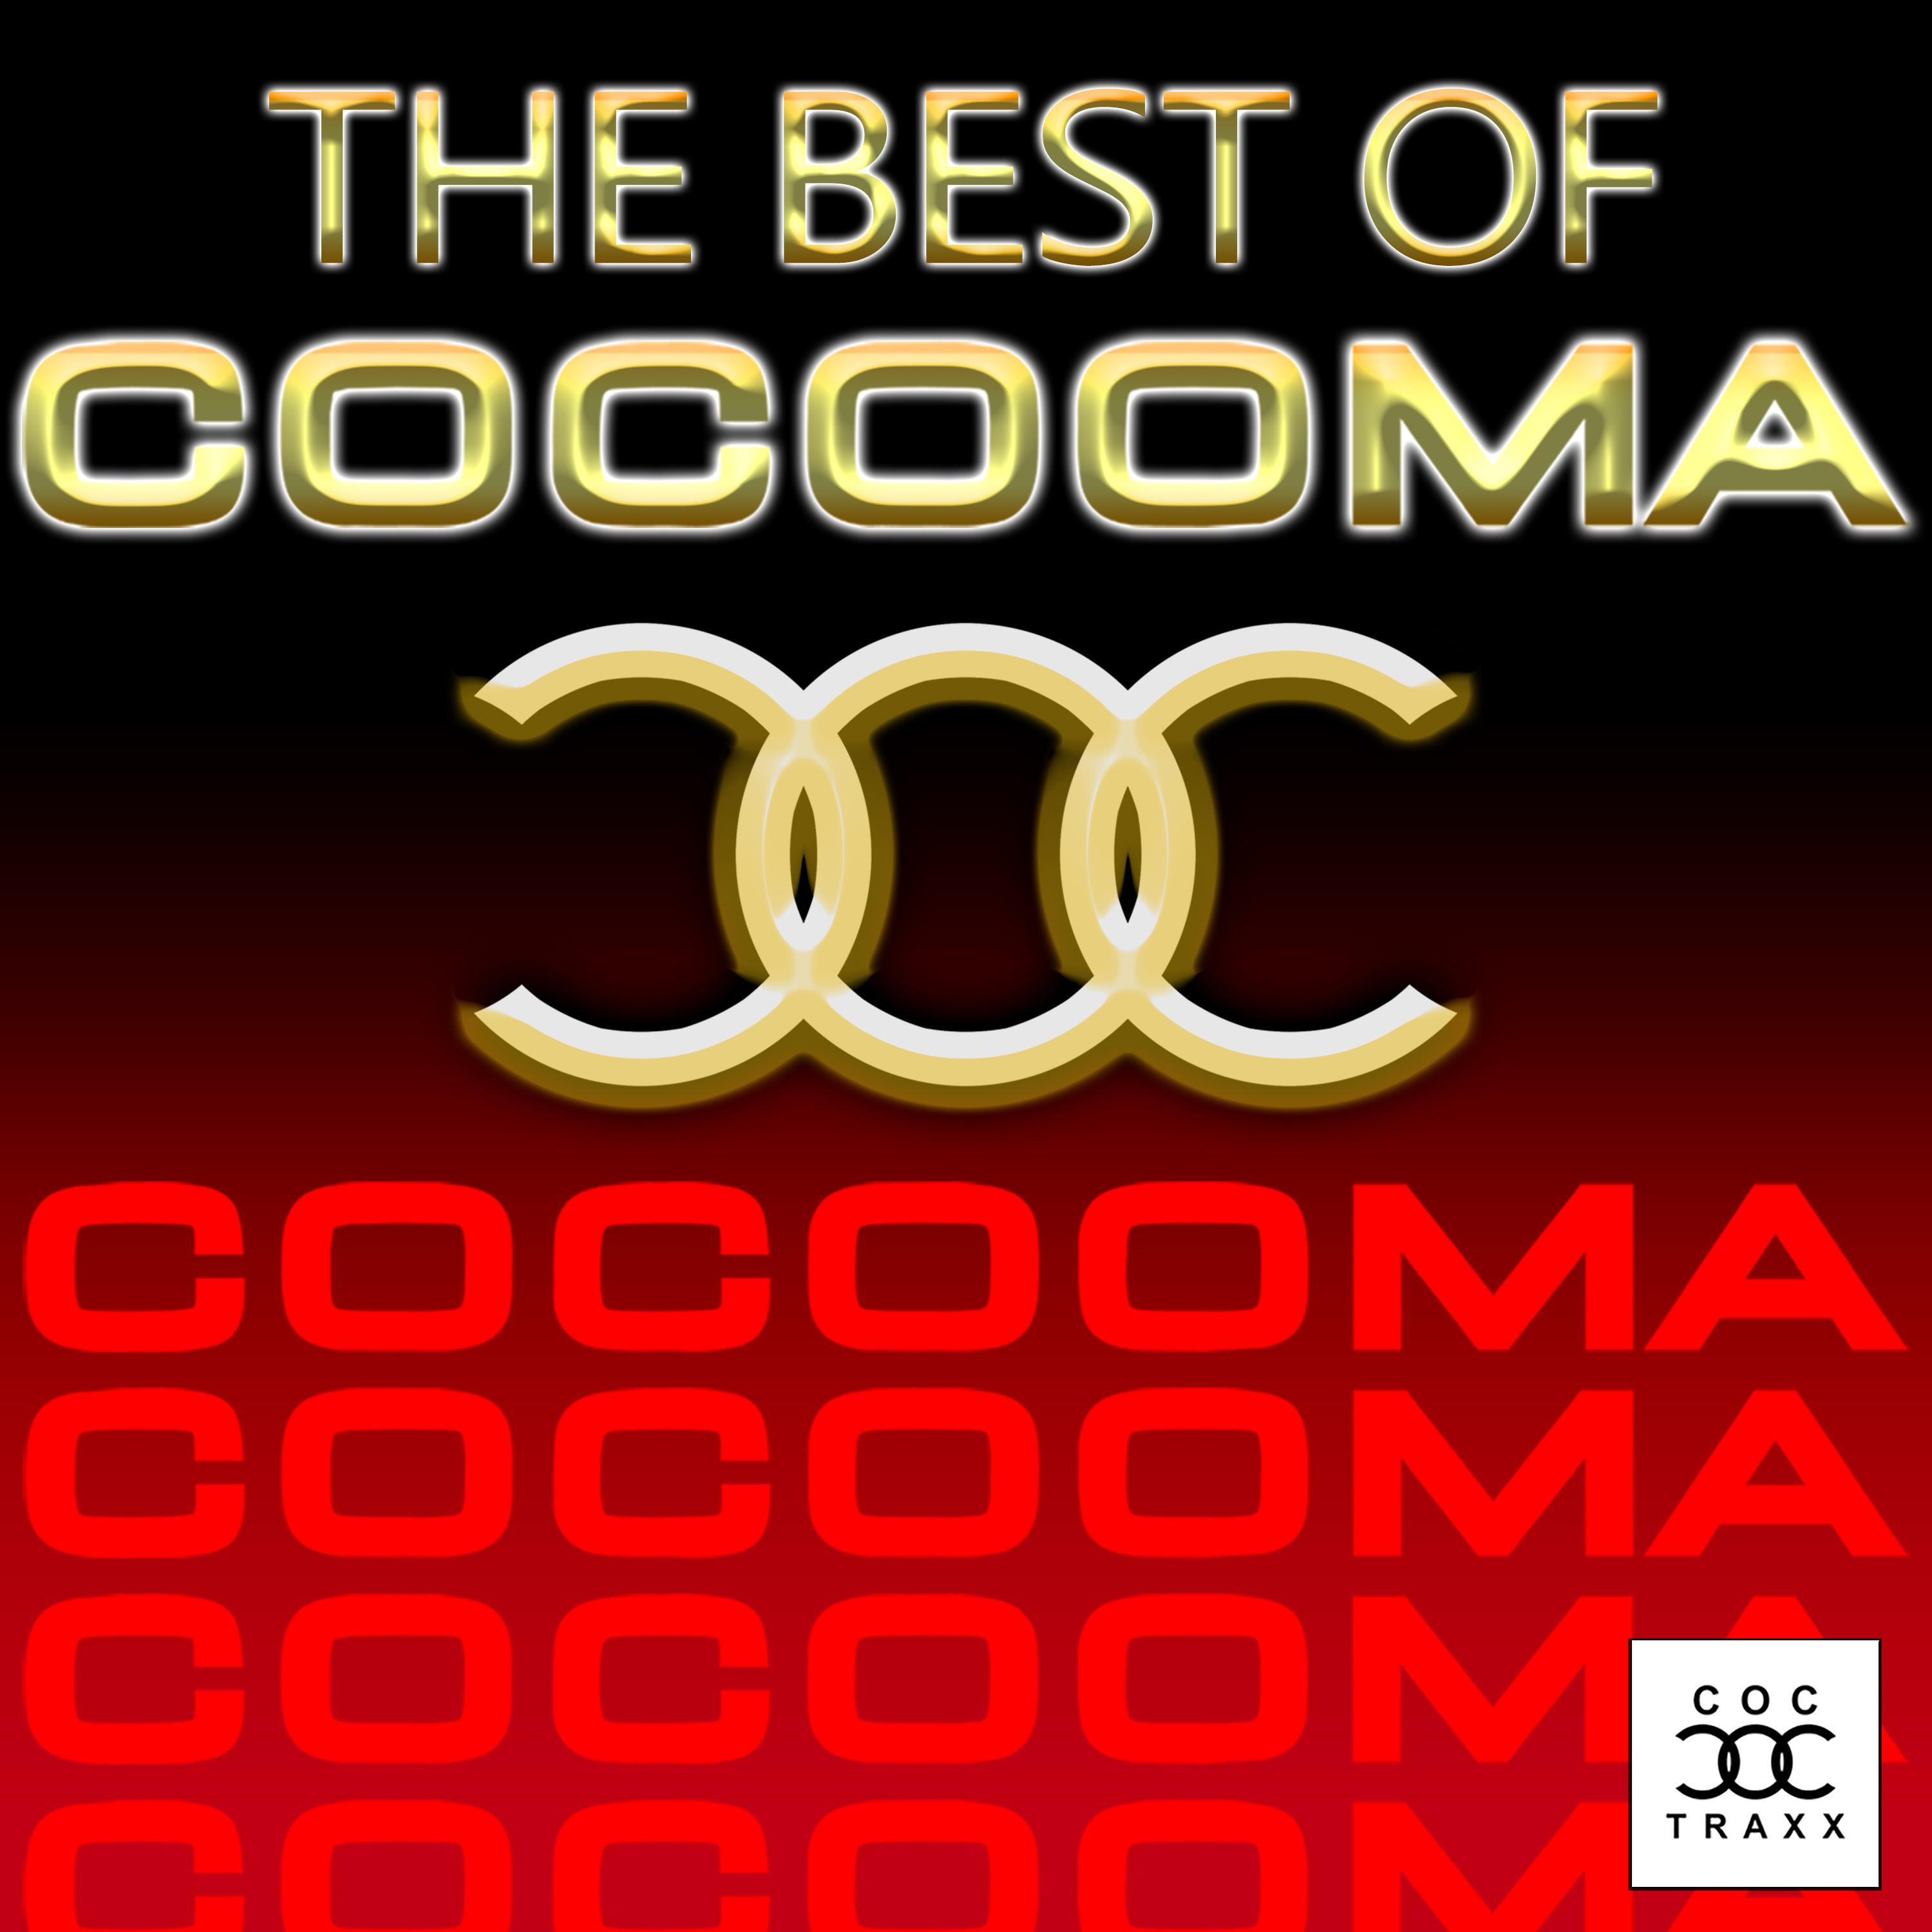 Cocooma